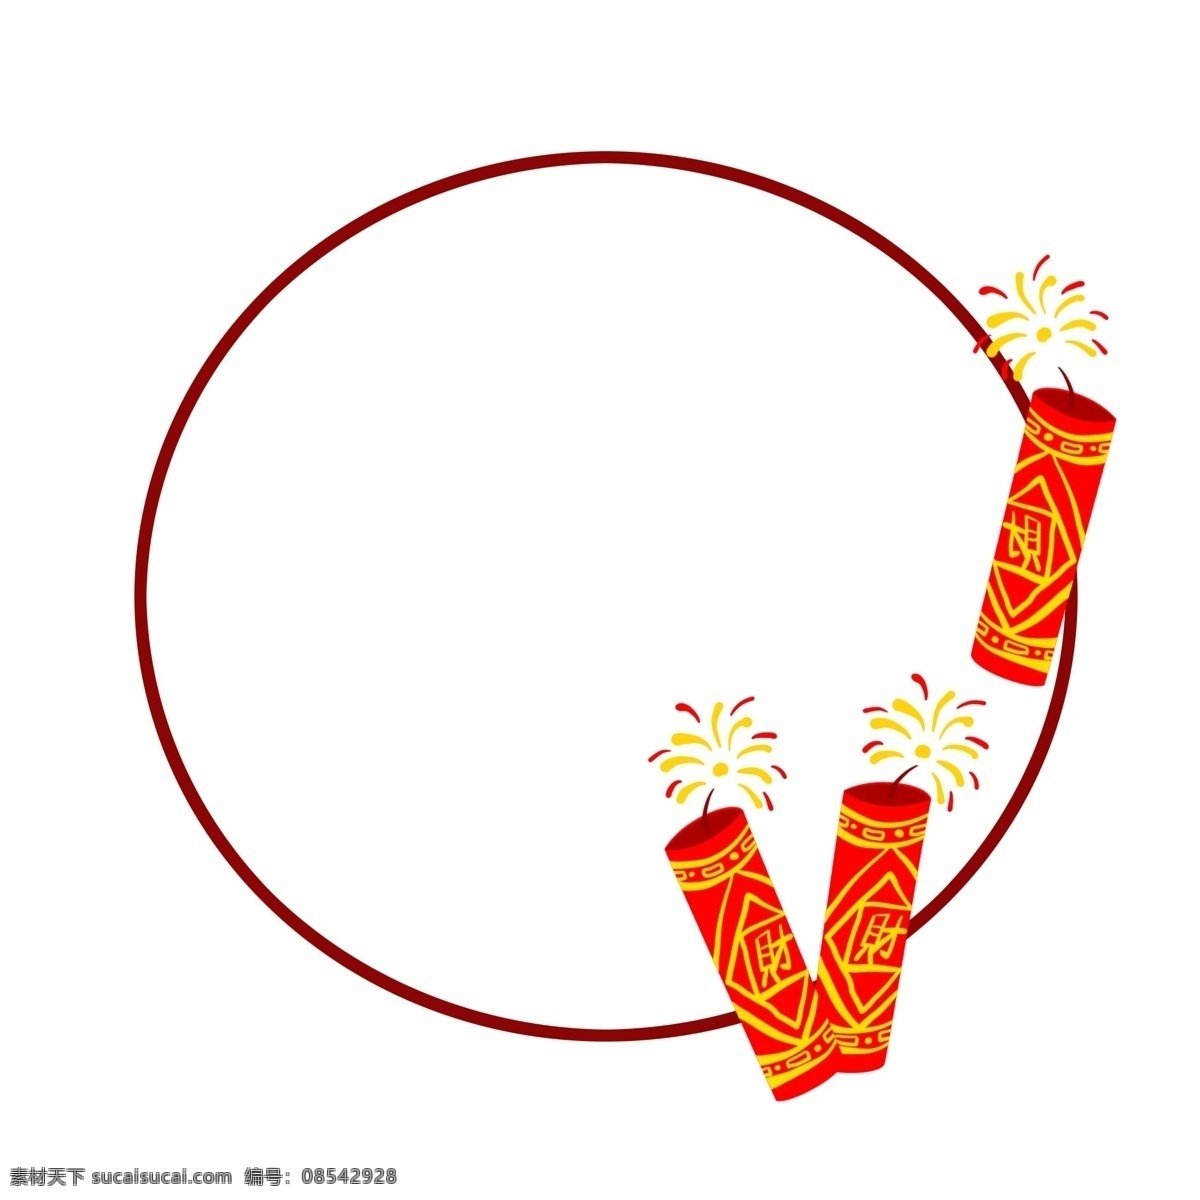 喜庆 新年 手绘 创意 边框 插画 鞭炮 新春 春节 喜庆的节日 庆典 圆形边框 框子 喜庆的框子 创意边框